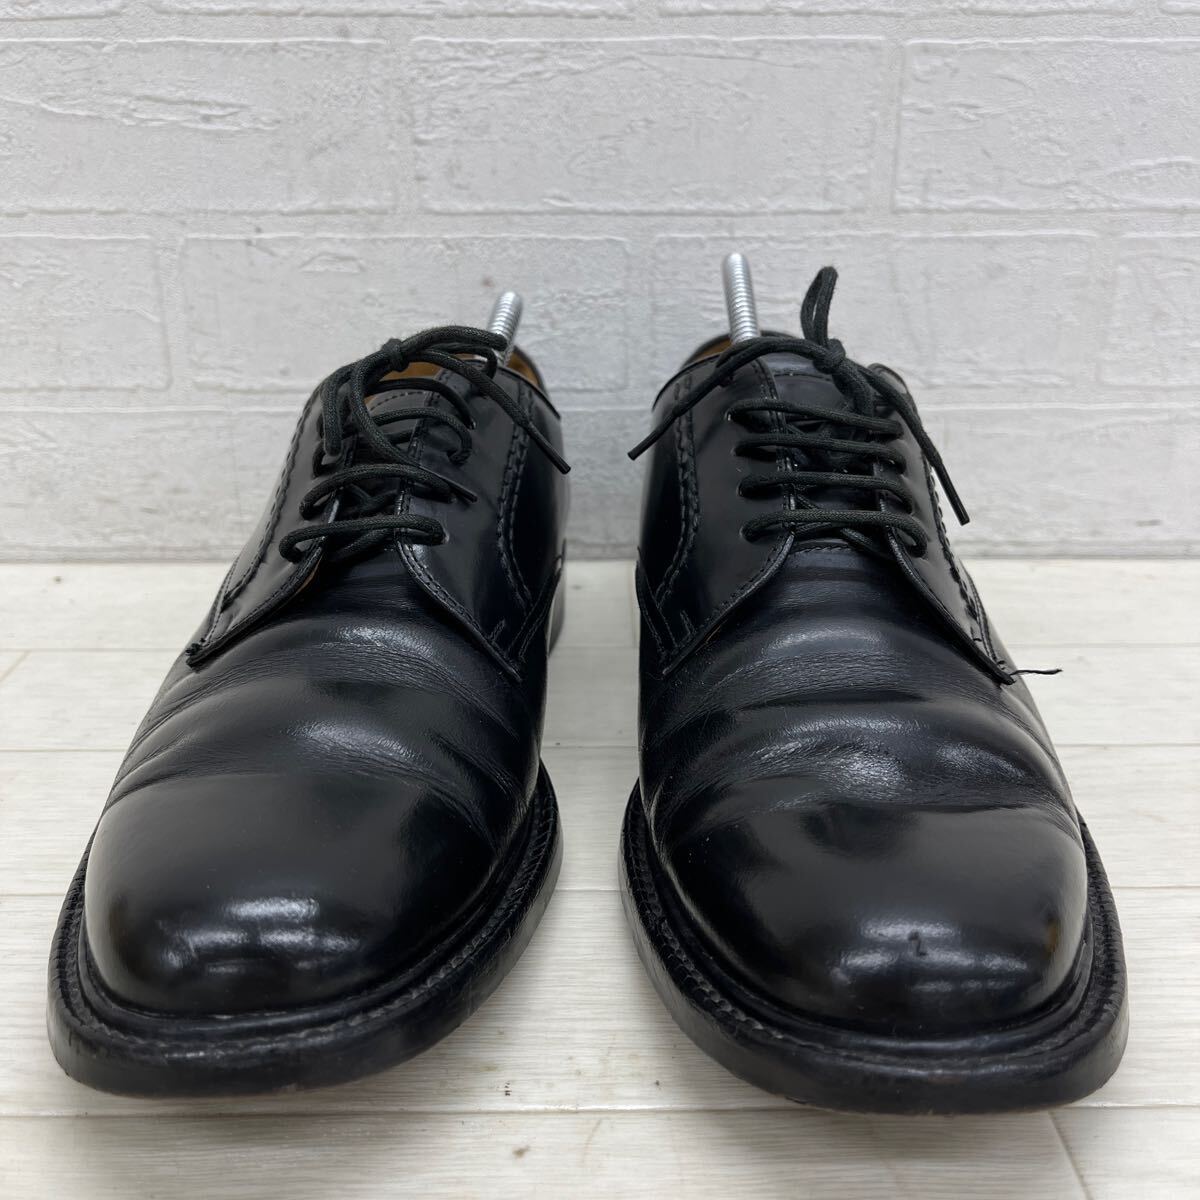 1410◎ ⑧ REGAL リーガル 靴 ビジネス シューズ オックスフォード レースアップ リアル レザー カジュアル ブラック メンズ24.5_画像3